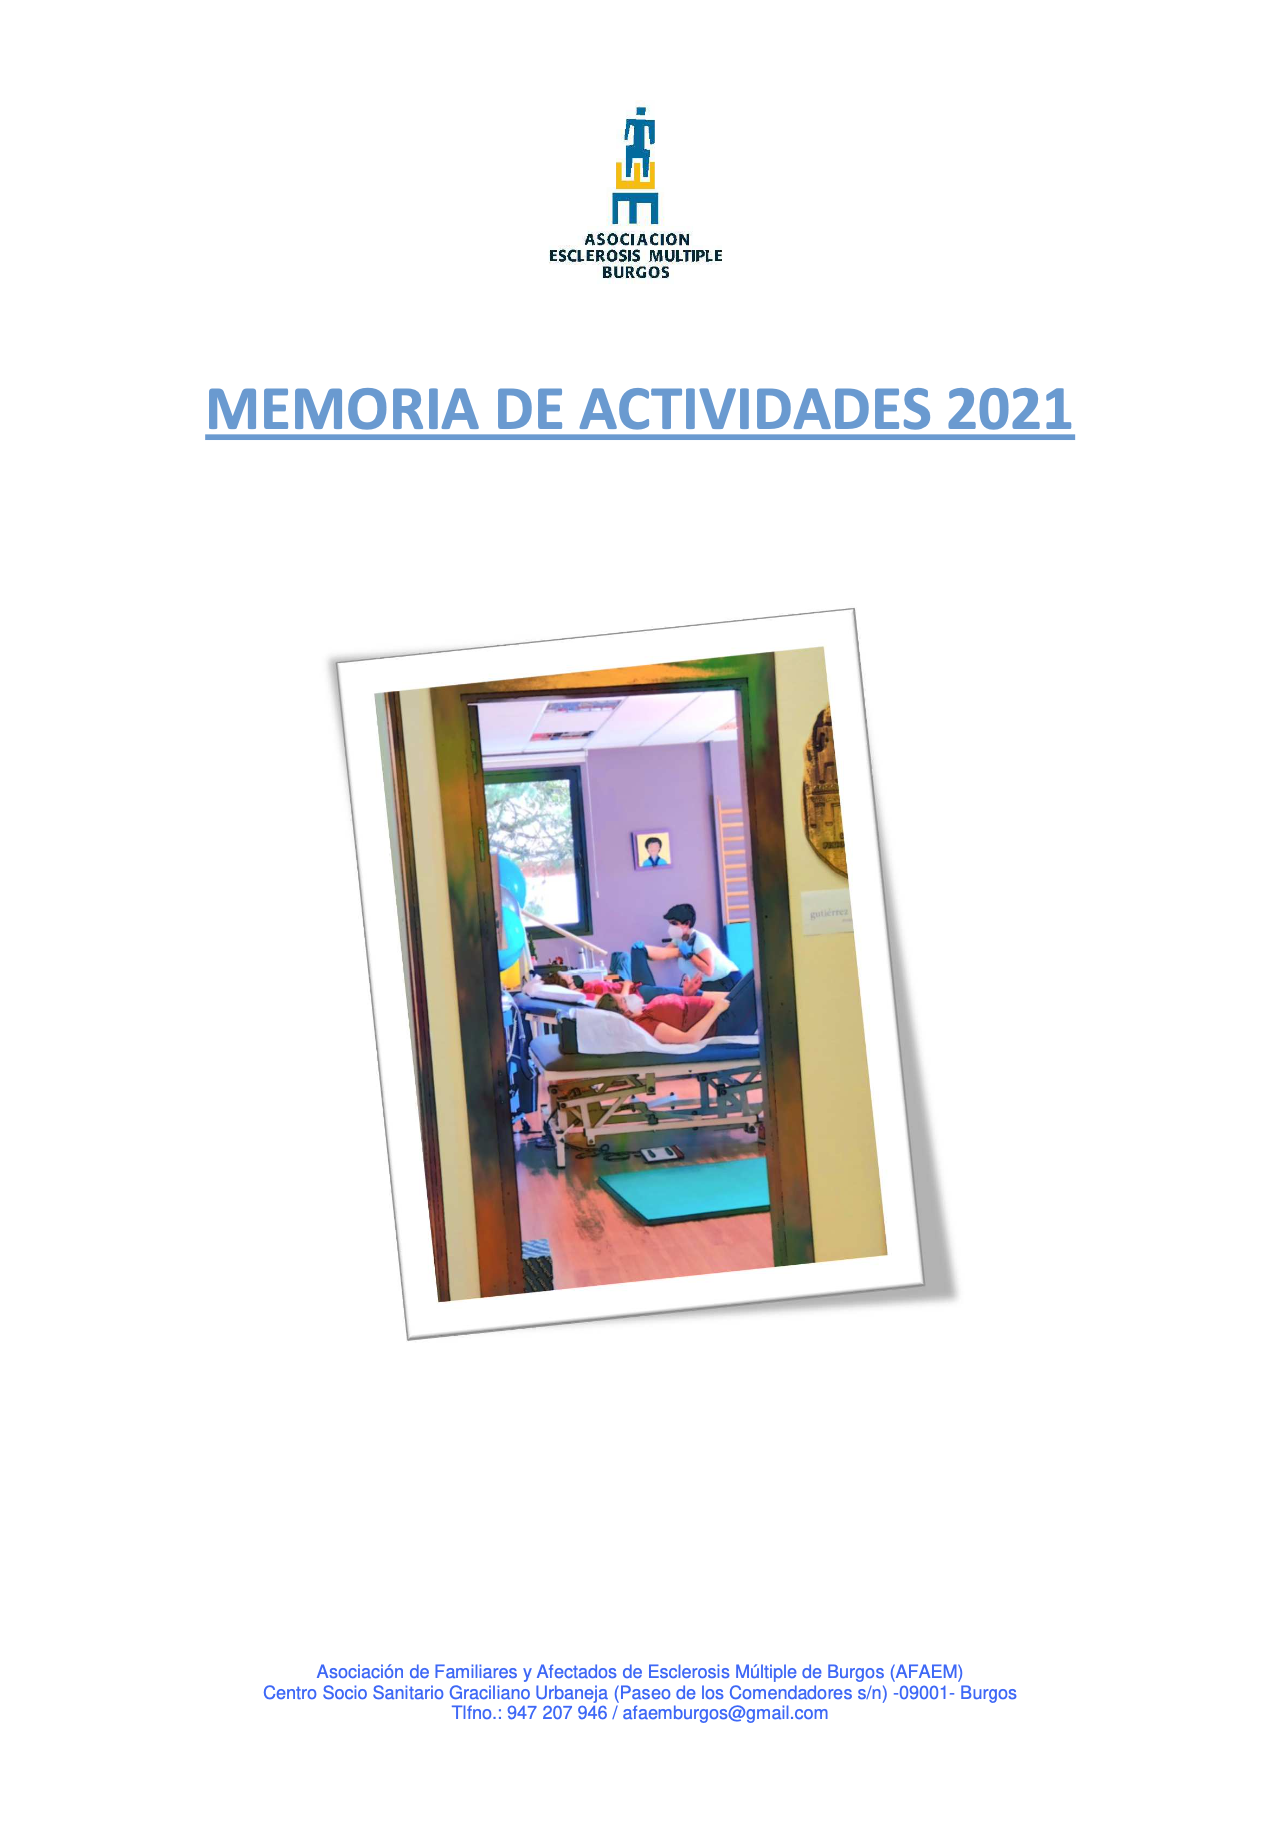 memoria-actividades-2021-de-afaem-burgos